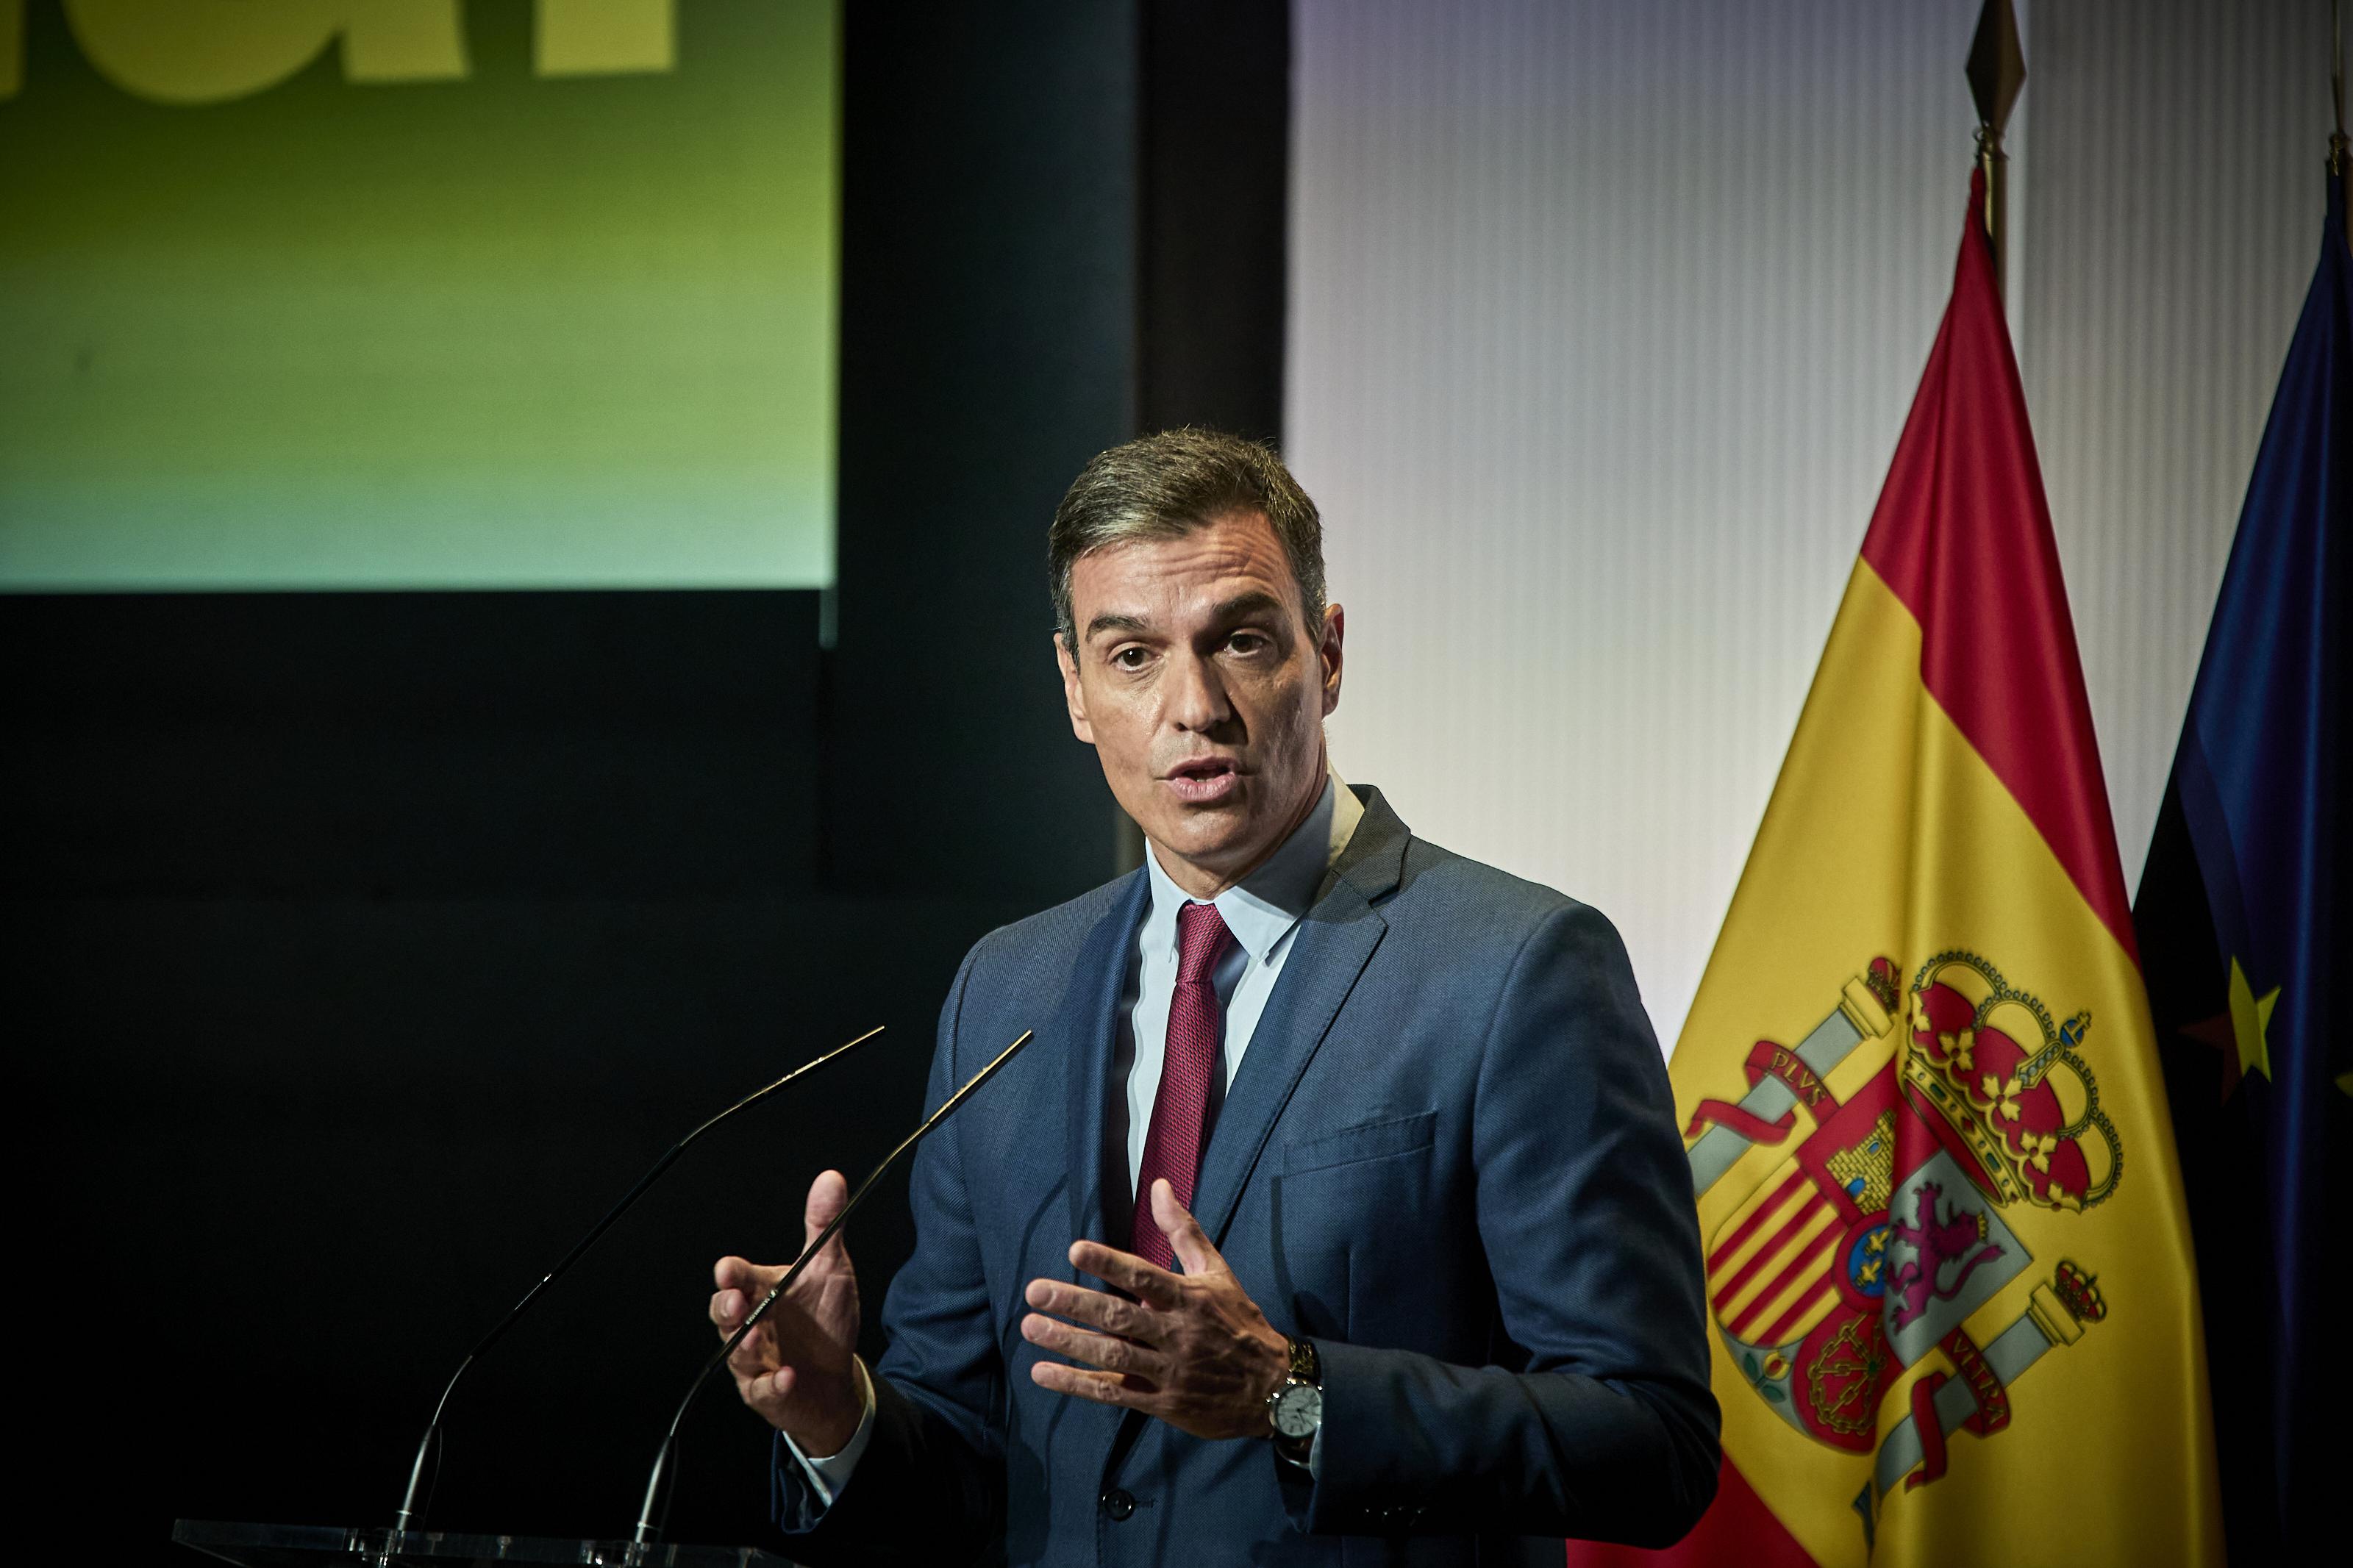 El presidente del Gobierno, Pedro Sánchez, interviene en un acto para abrir el nuevo curso político. Jesús Hellín / Europa Press